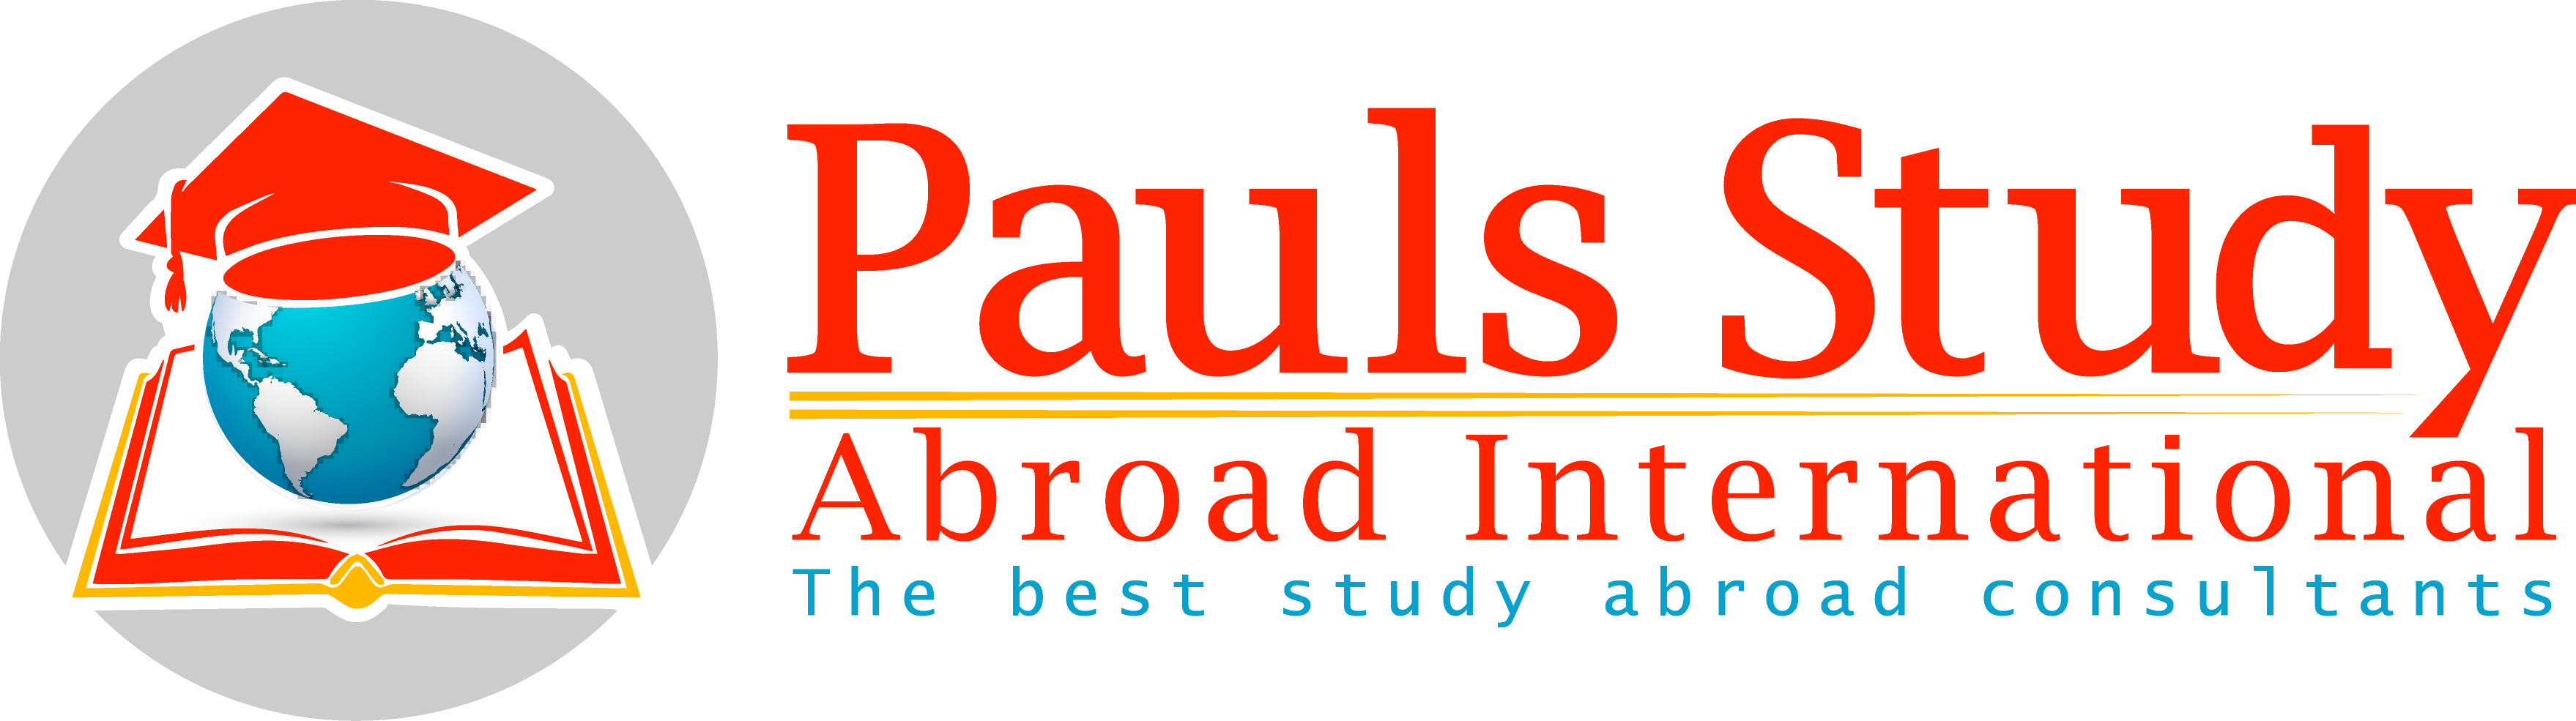 Pauls Study Abroad International